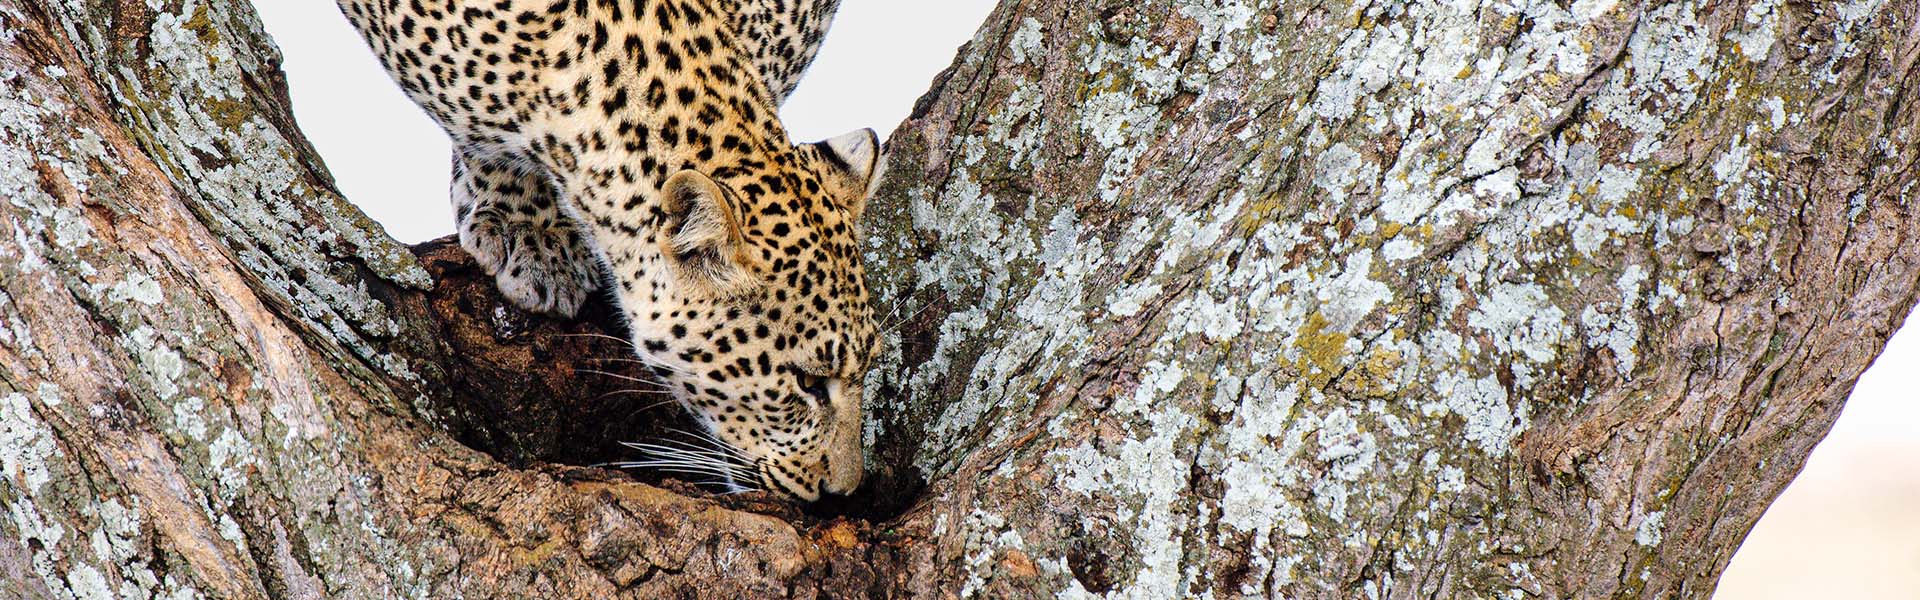 Leopard in tree drinking